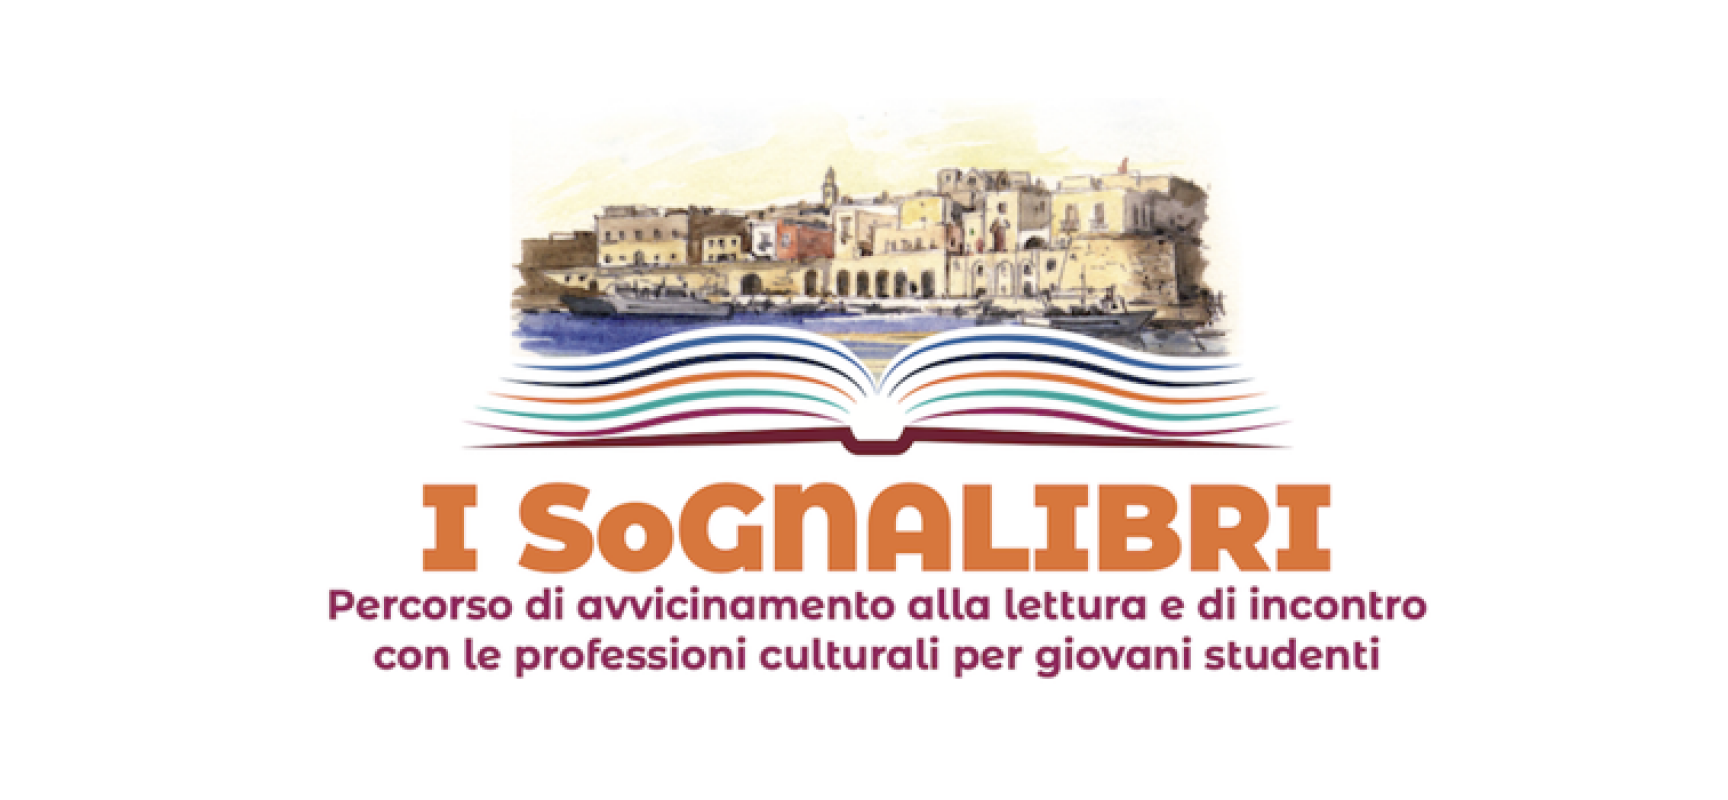 Libri nel Borgo Antico: i ragazzi del progetto “SoGNALIBRI” protagonisti del festival